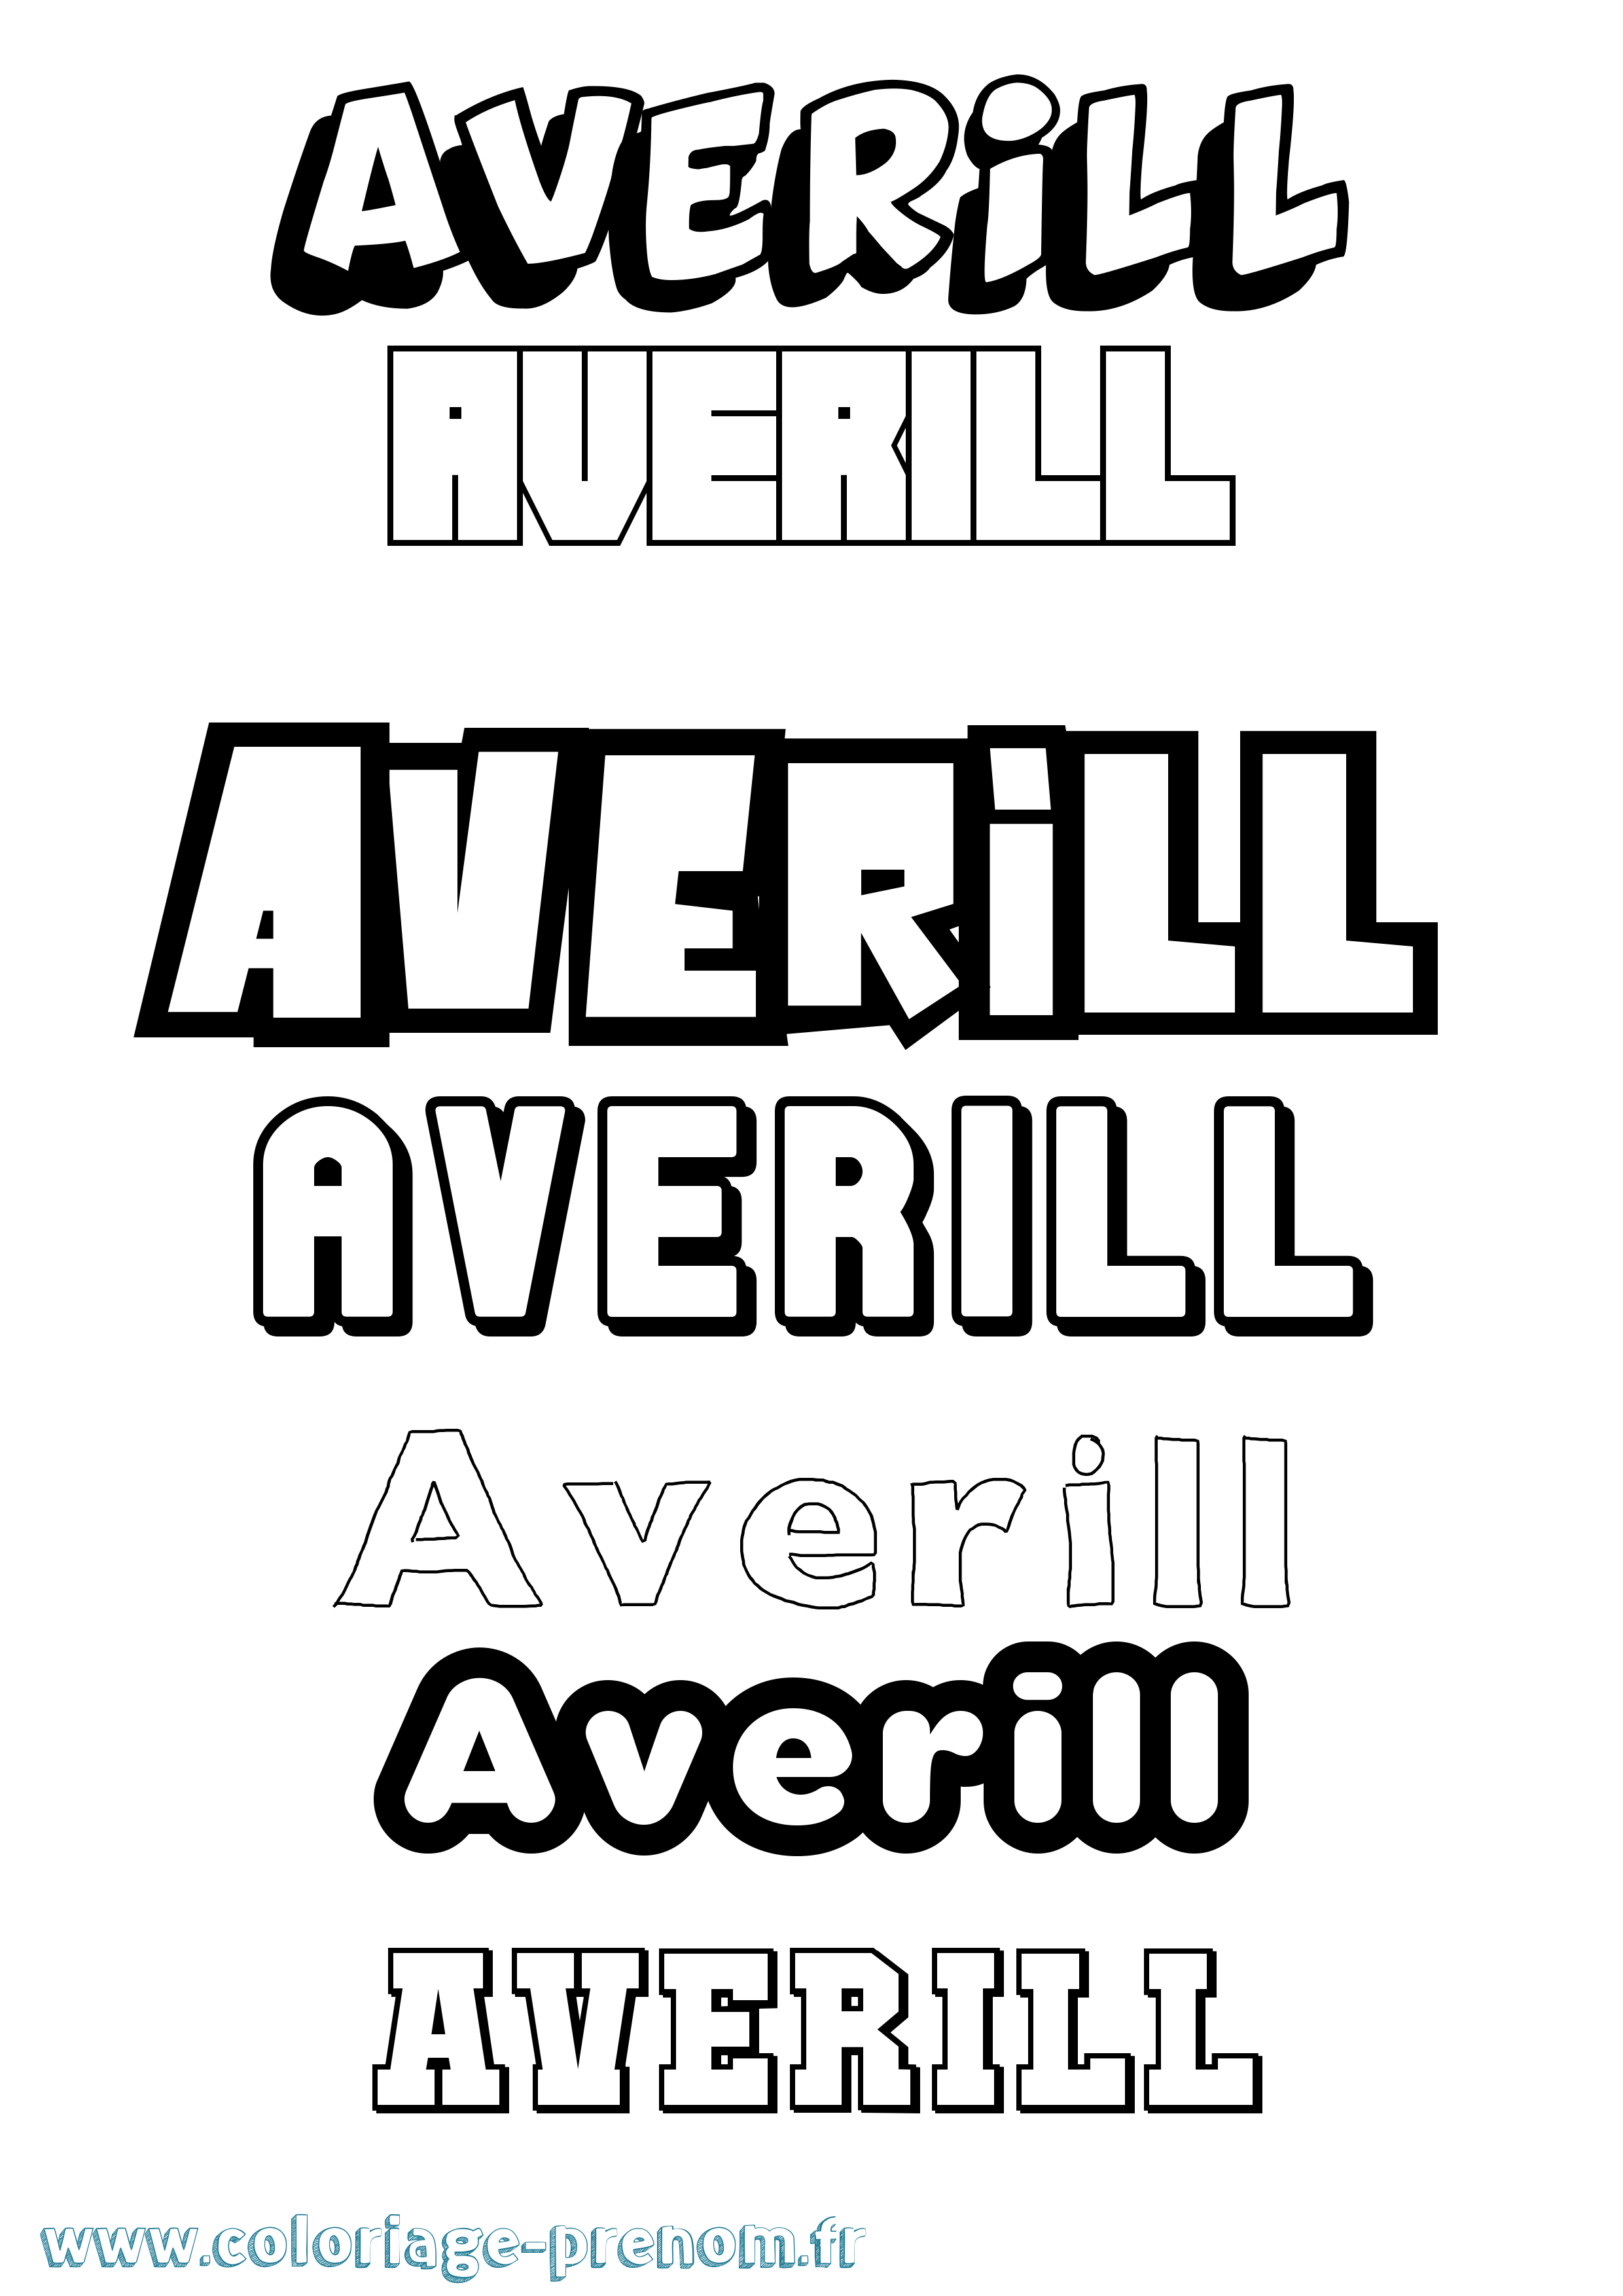 Coloriage prénom Averill Simple